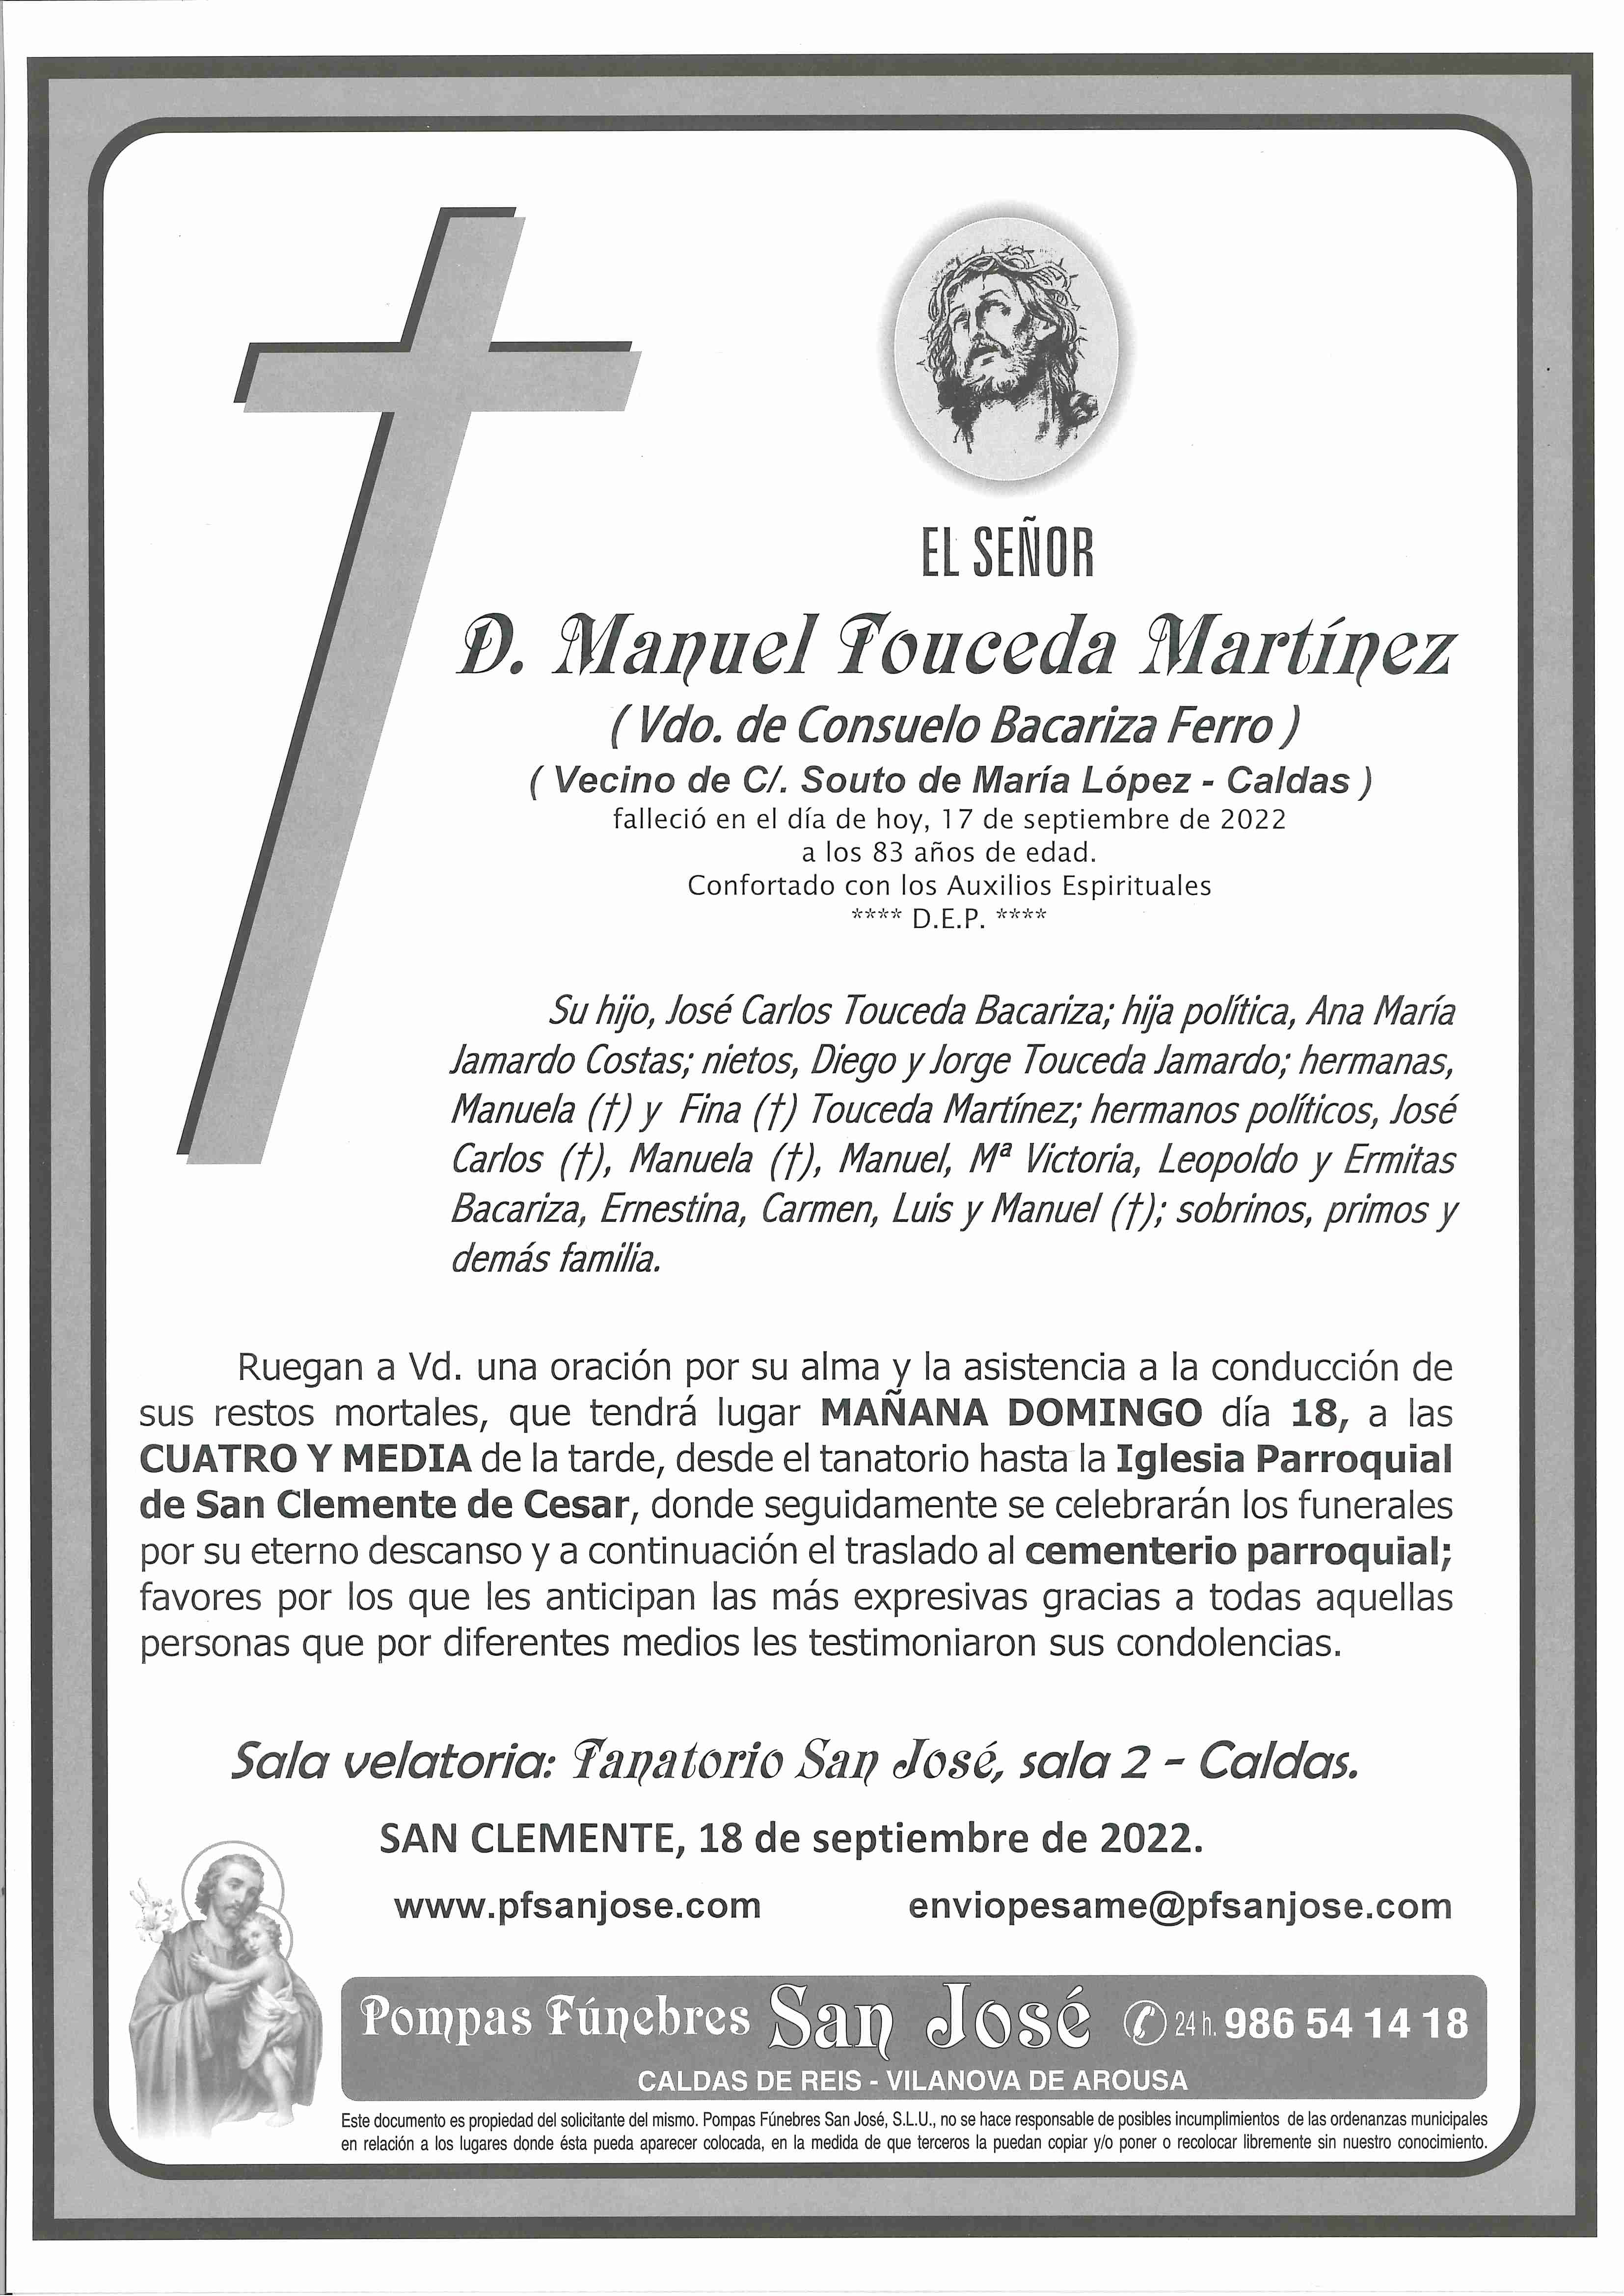 Manuel Touceda Martínez